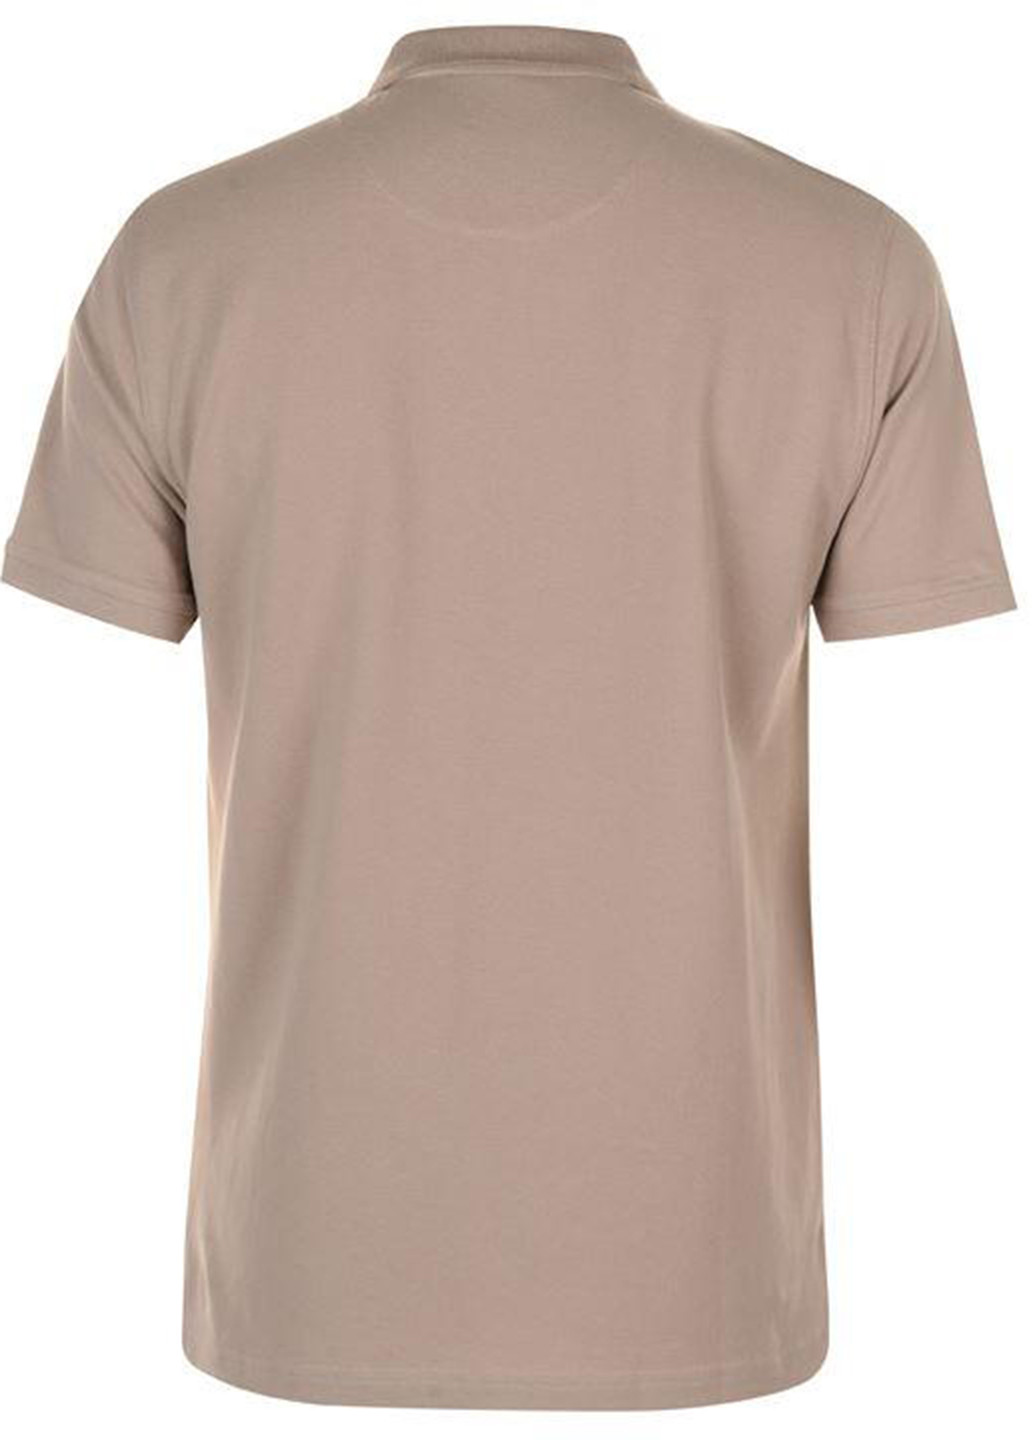 Бежевая футболка-поло для мужчин Pierre Cardin однотонная